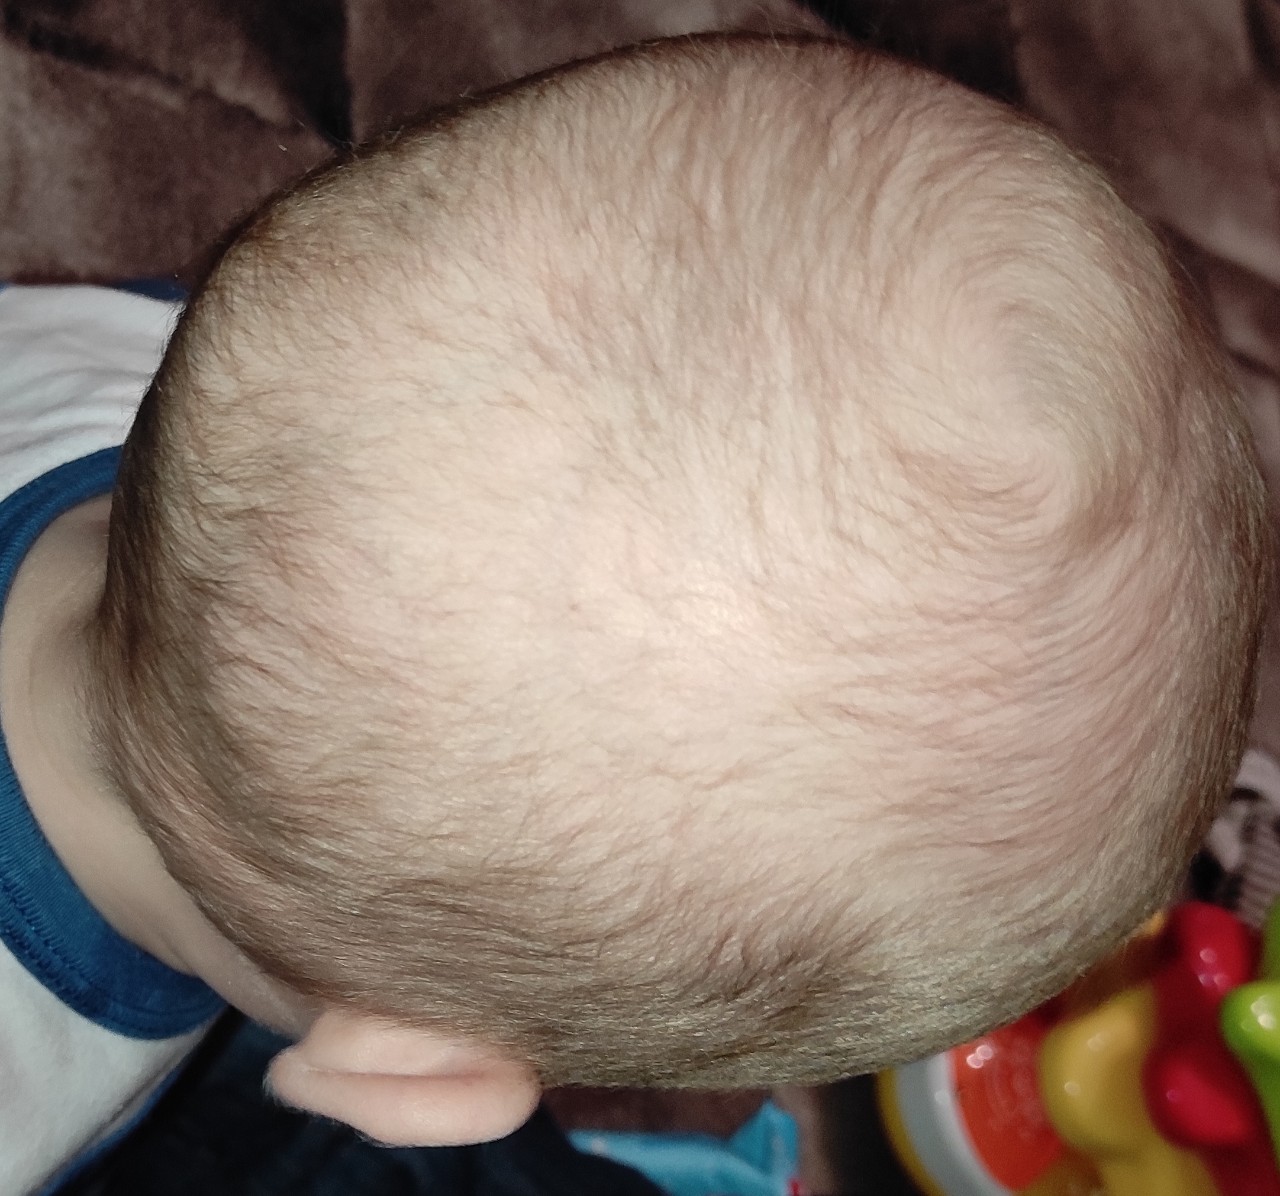 голова ребенка 3 месяца фото